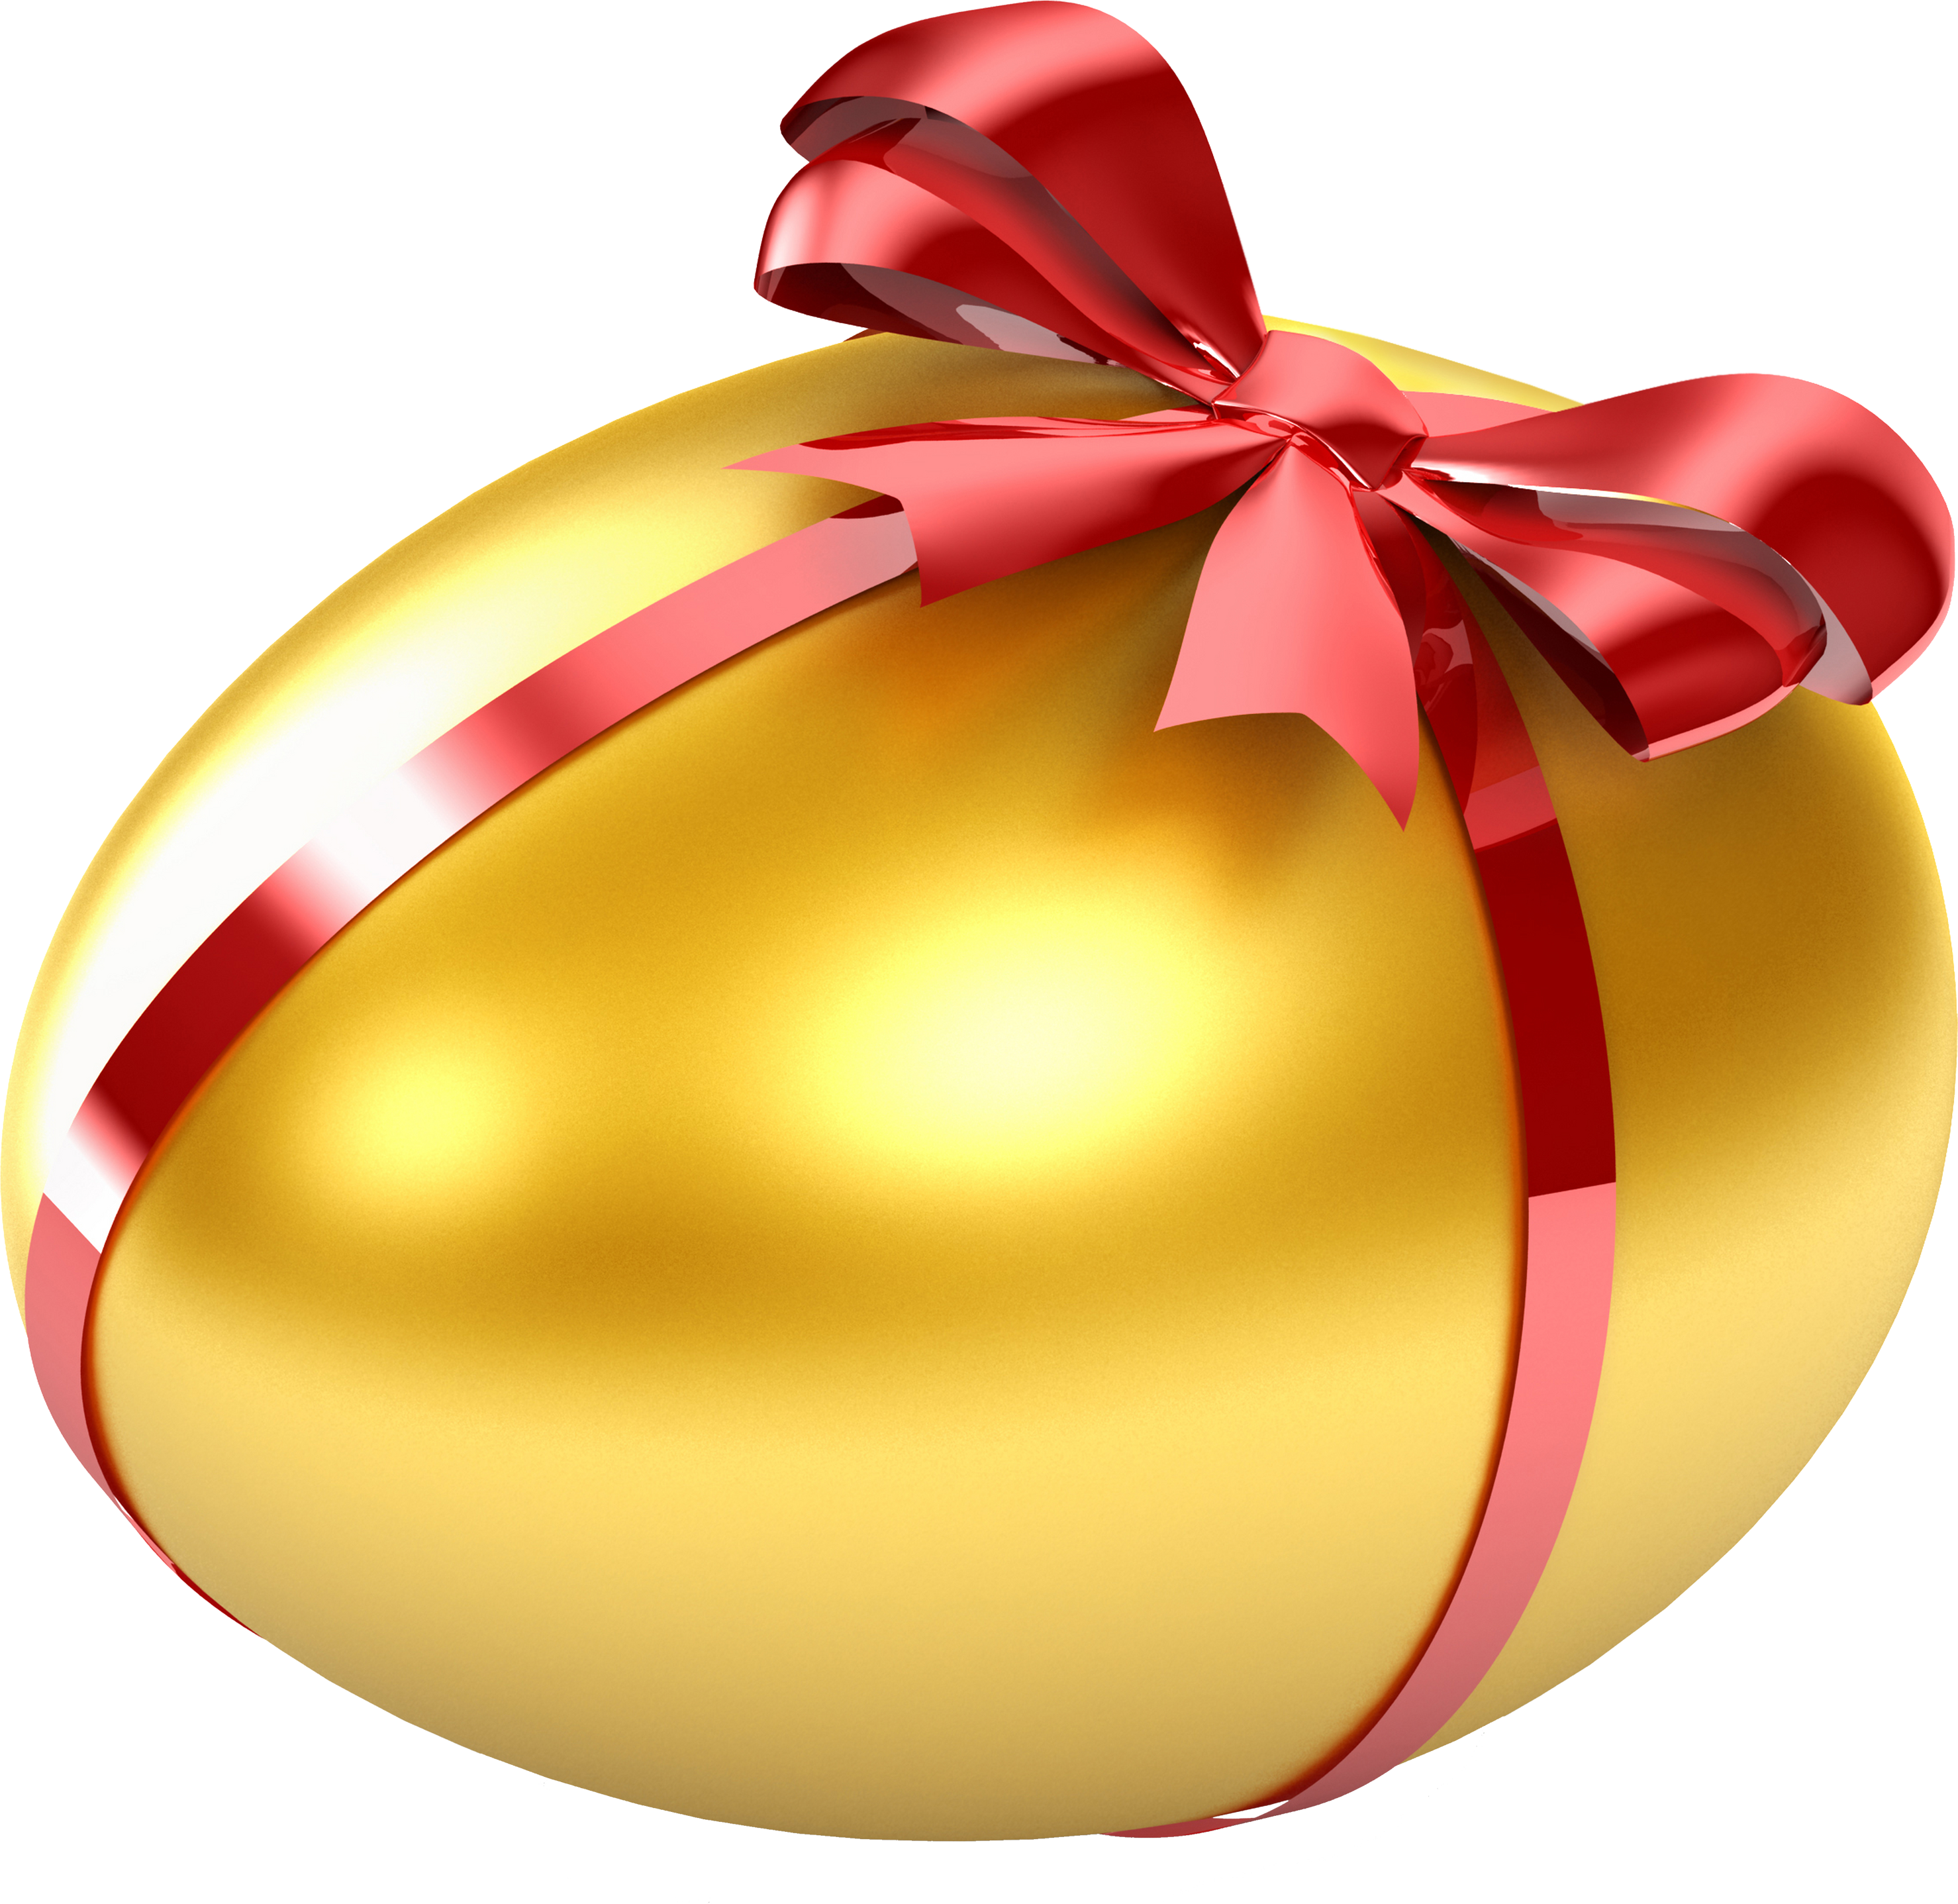 Gold Egg –